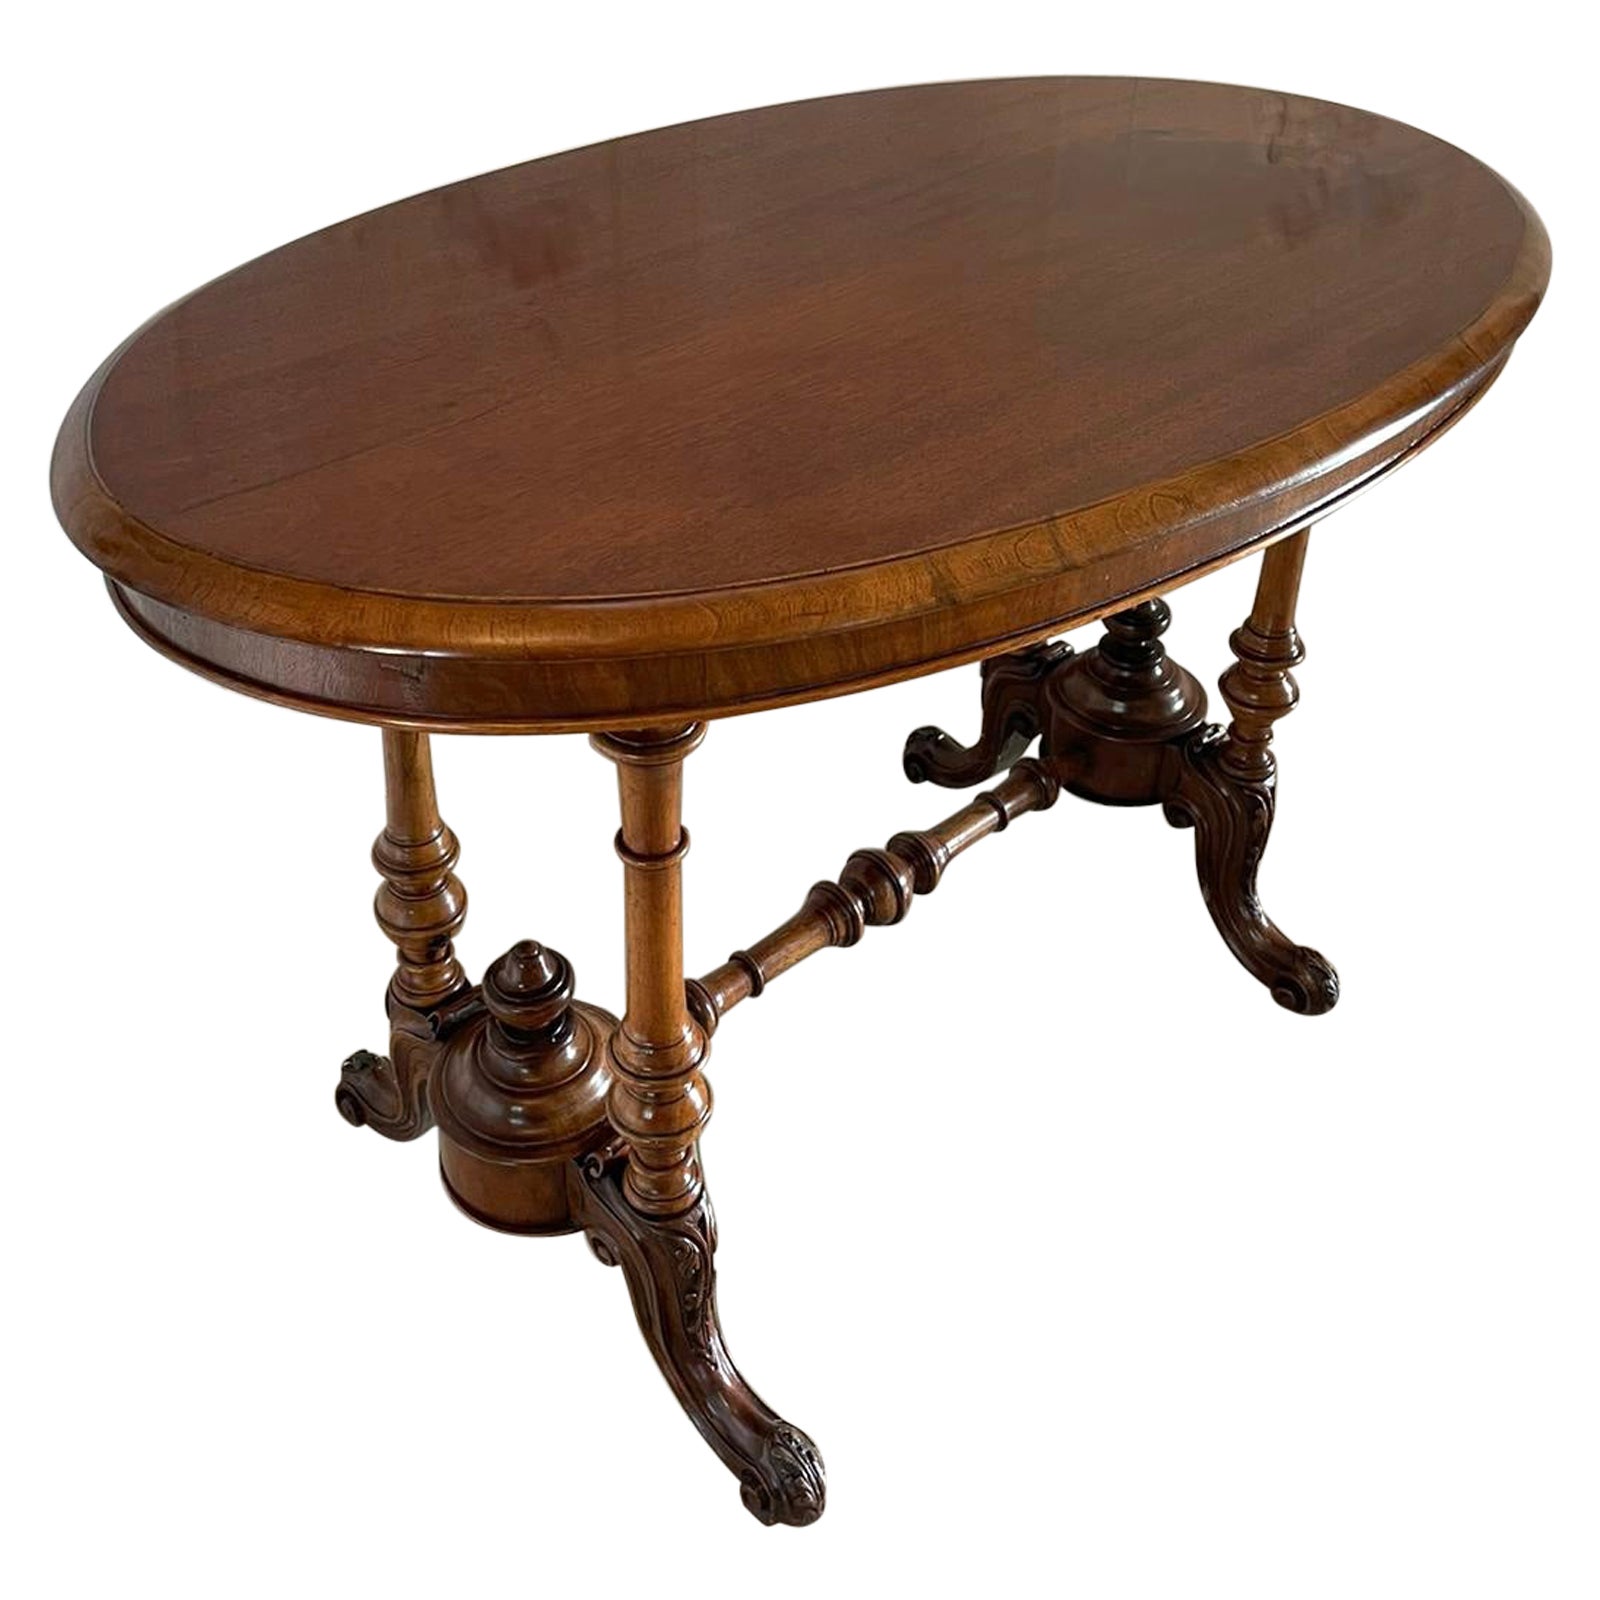  Antiker viktorianischer ovaler Nussbaum-Mitteltisch aus dem 19. Jahrhundert